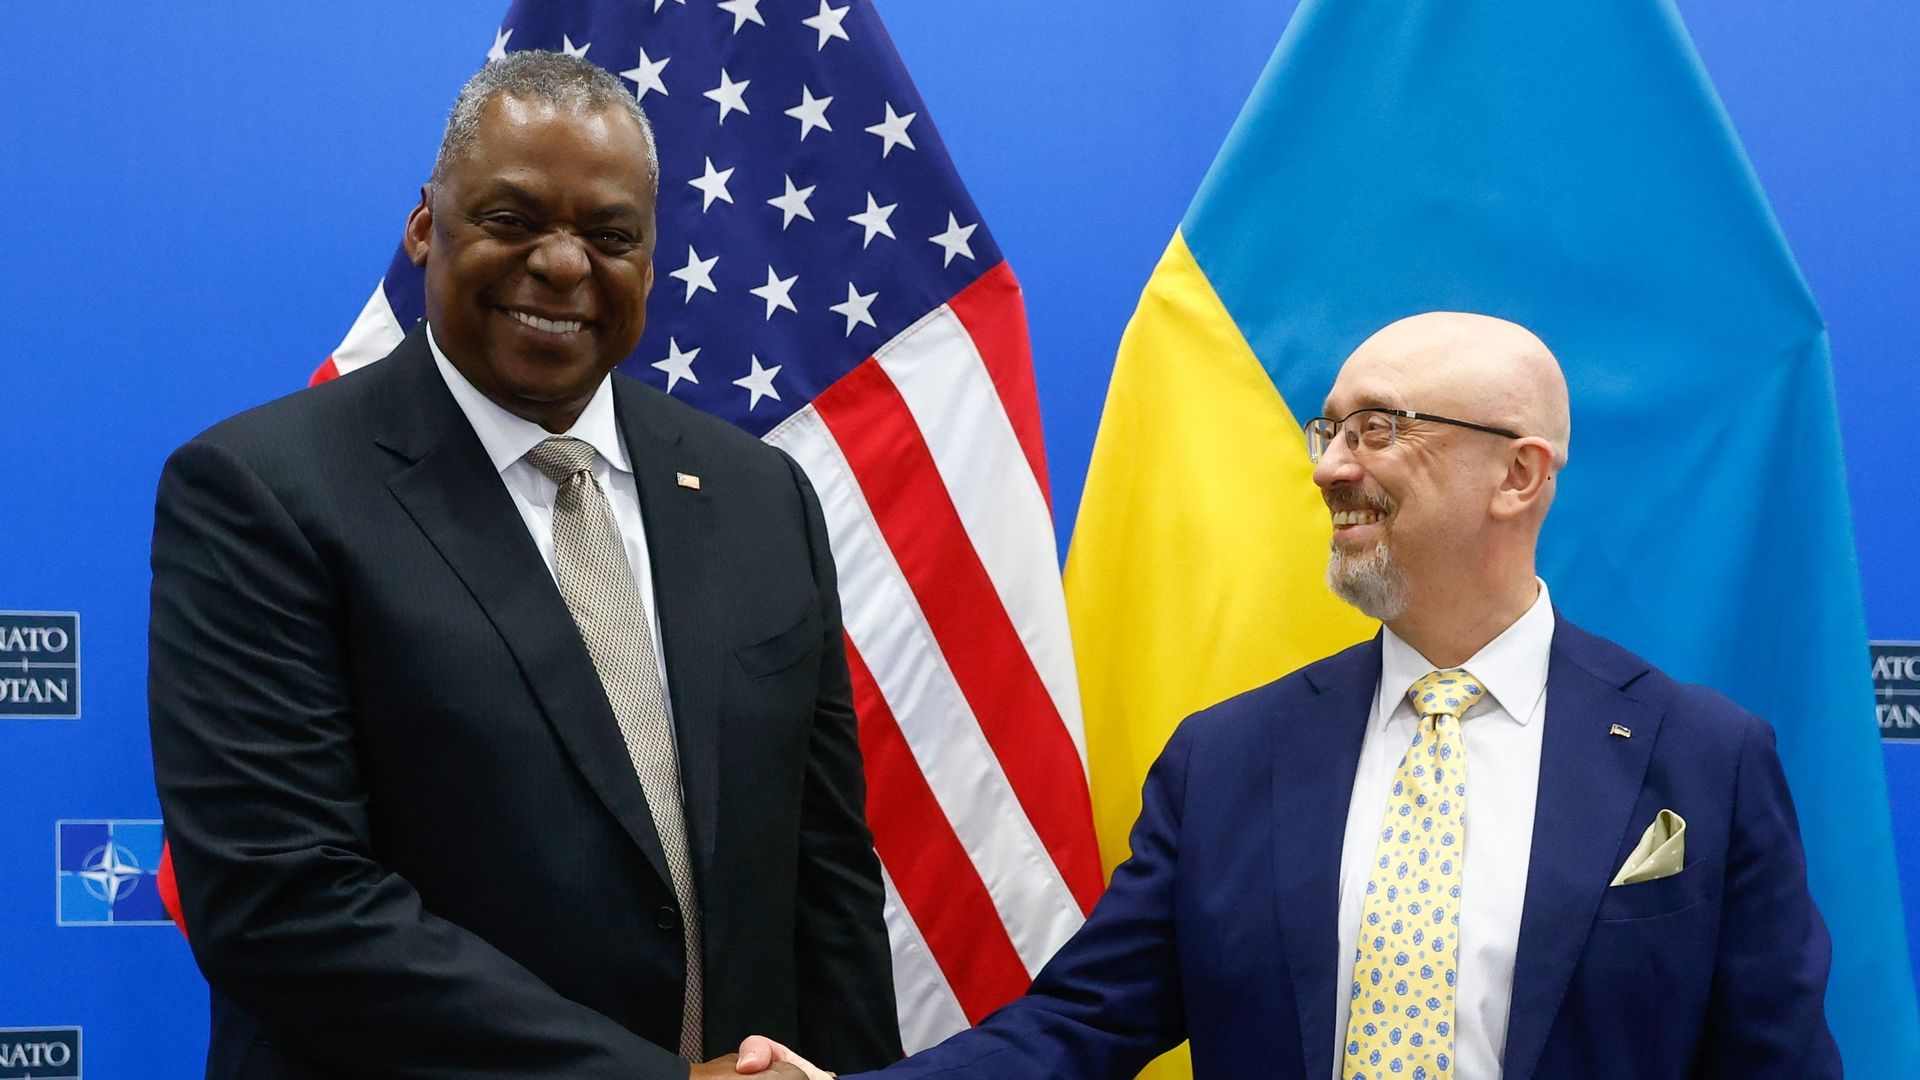 Le secrétaire américain à la Défense, Lloyd Austin (à gauche), serre la main du ministre ukrainien de la Défense, Oleksiy Reznikov (à droite), avant une réunion du groupe de contact pour la défense de l'Ukraine dans le cadre du Conseil des ministres de la